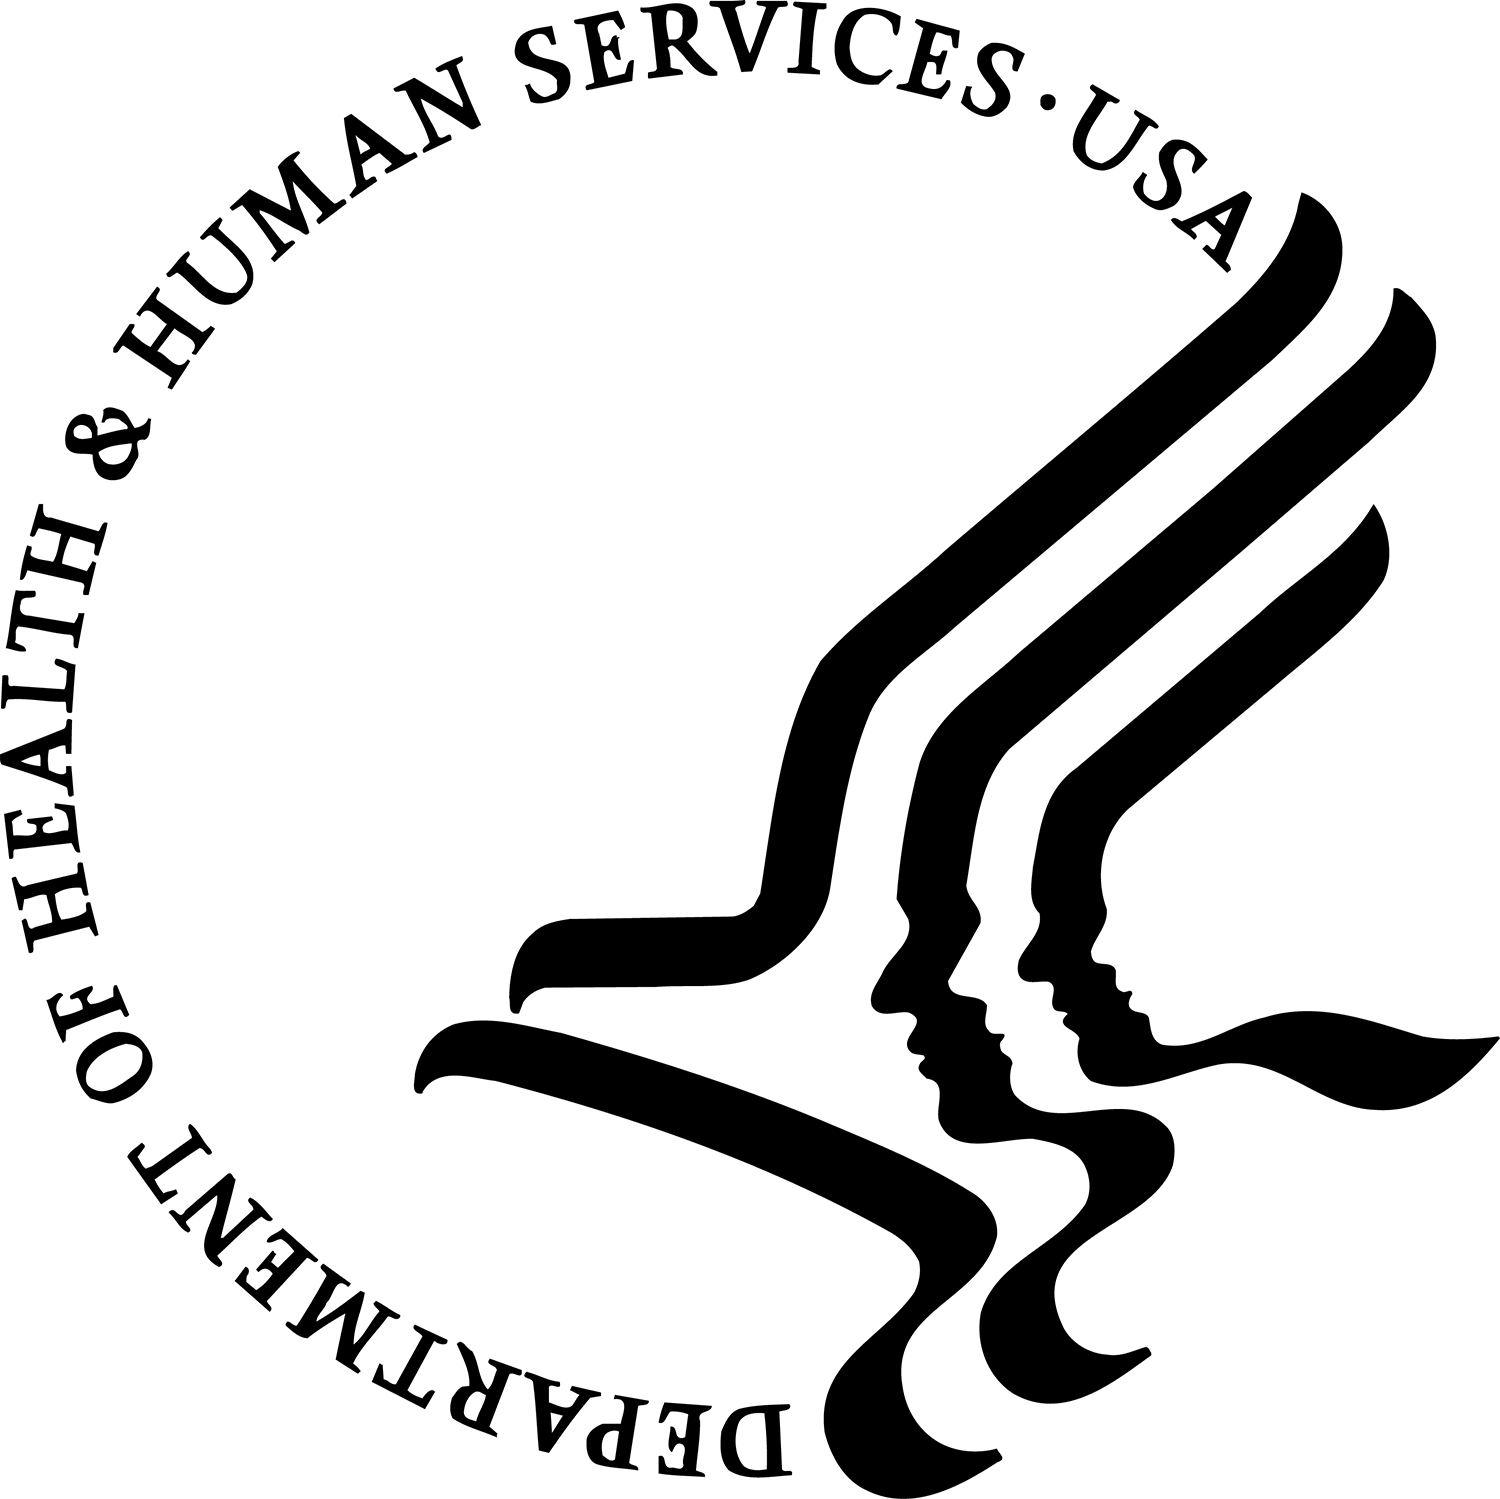 NIH Logo - Graphics and Logos